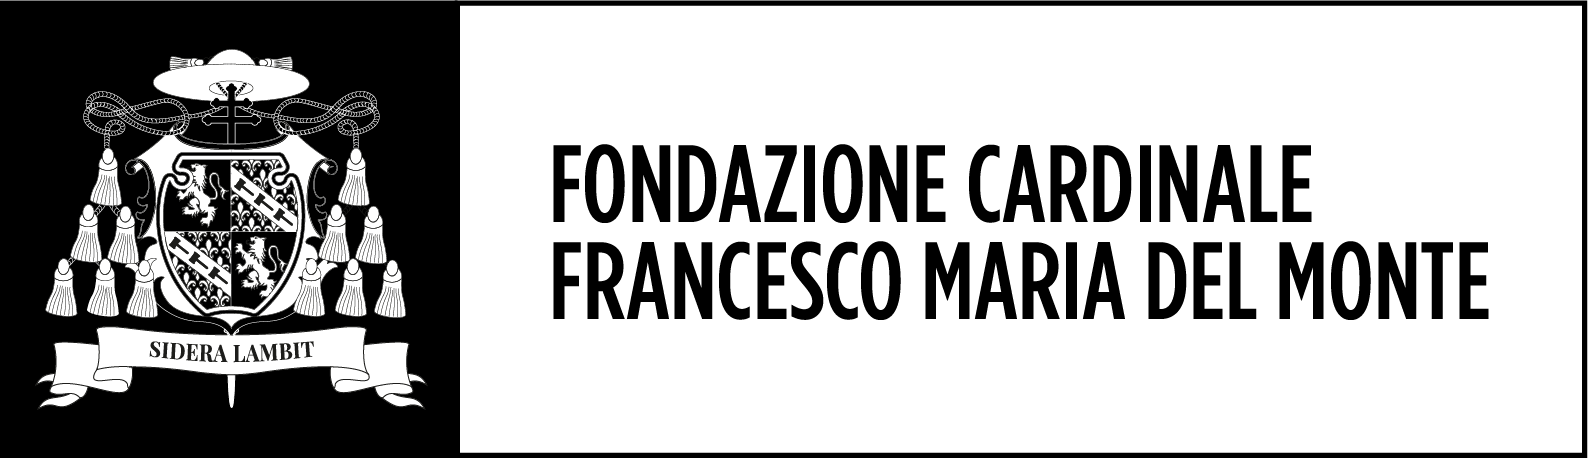 Fondazione Cardinale Francesco Maria Del Monte logo